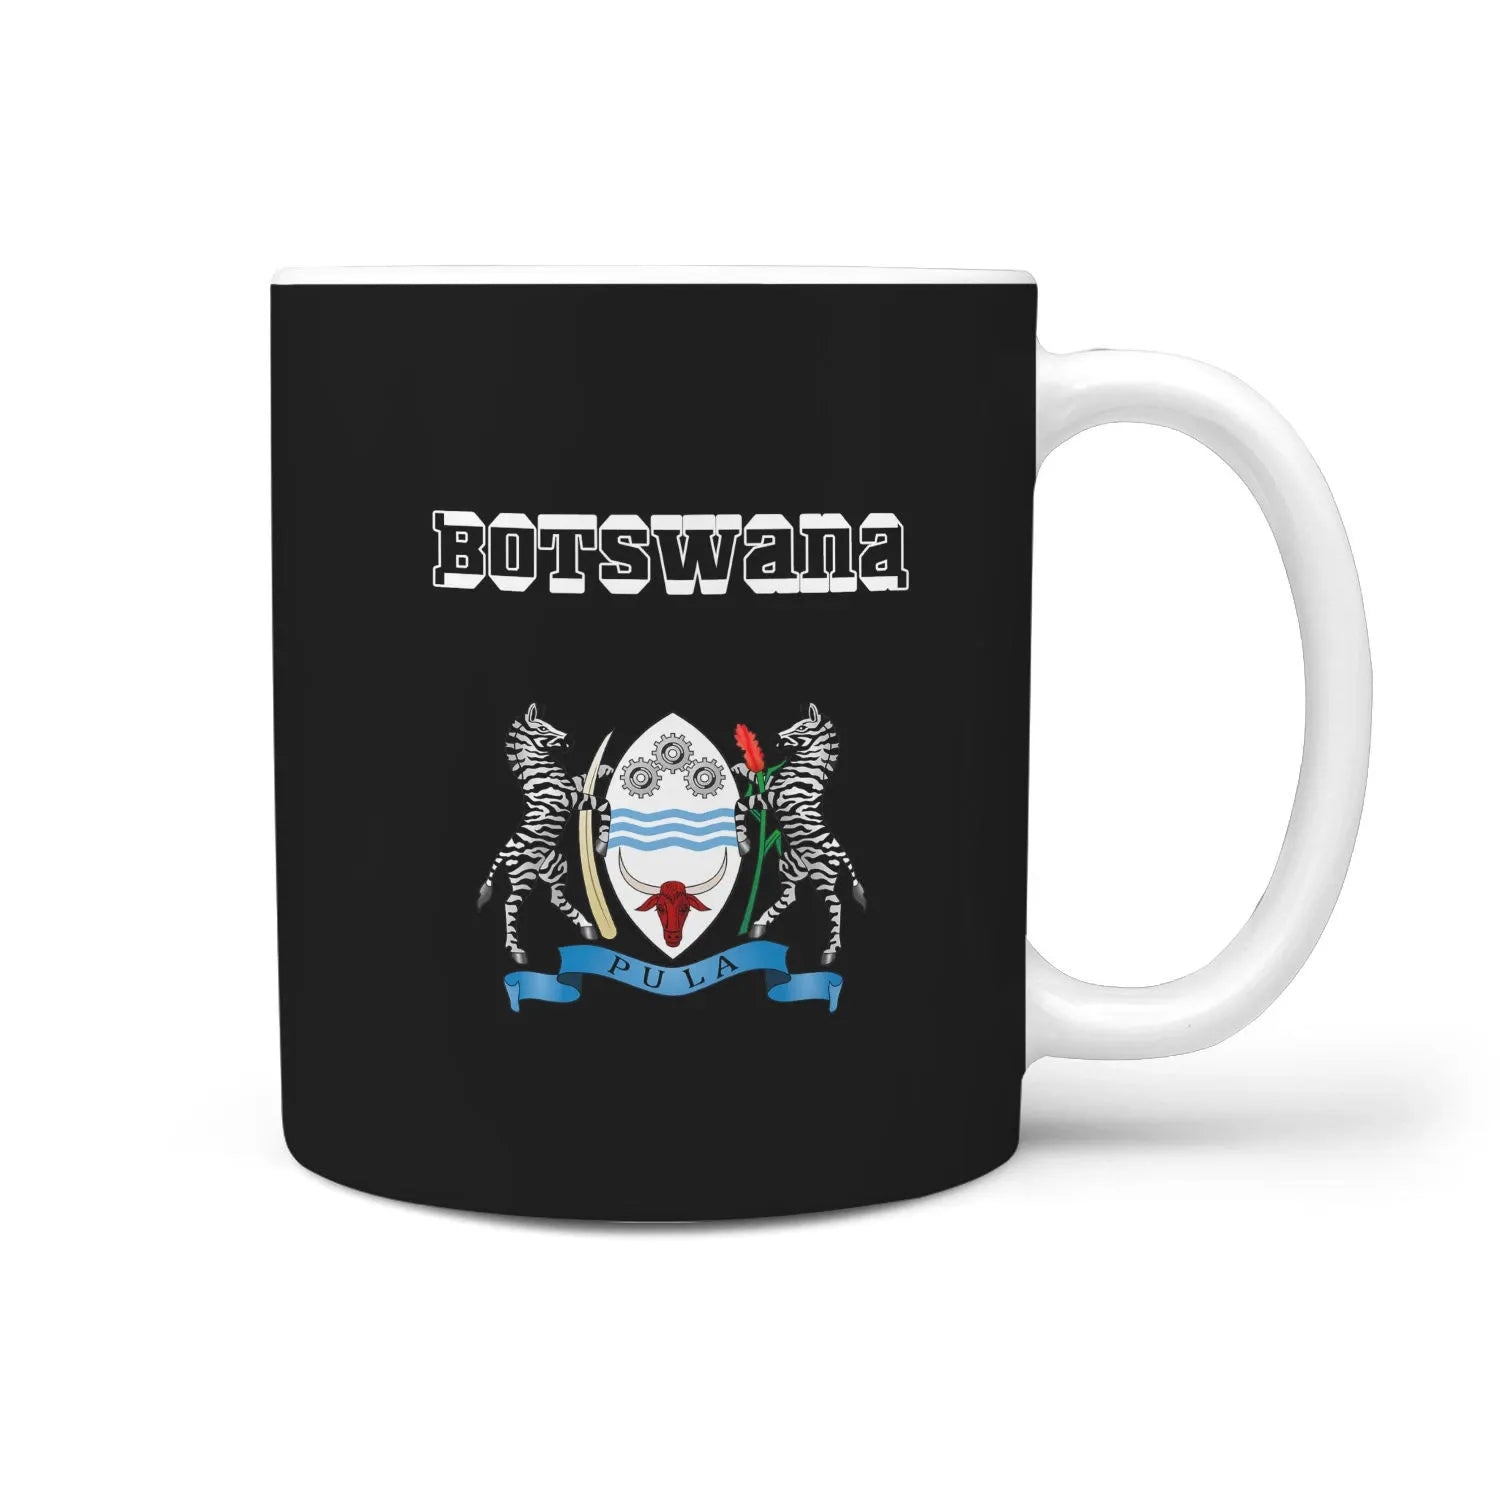 botswana-mug-coat-of-arm-name